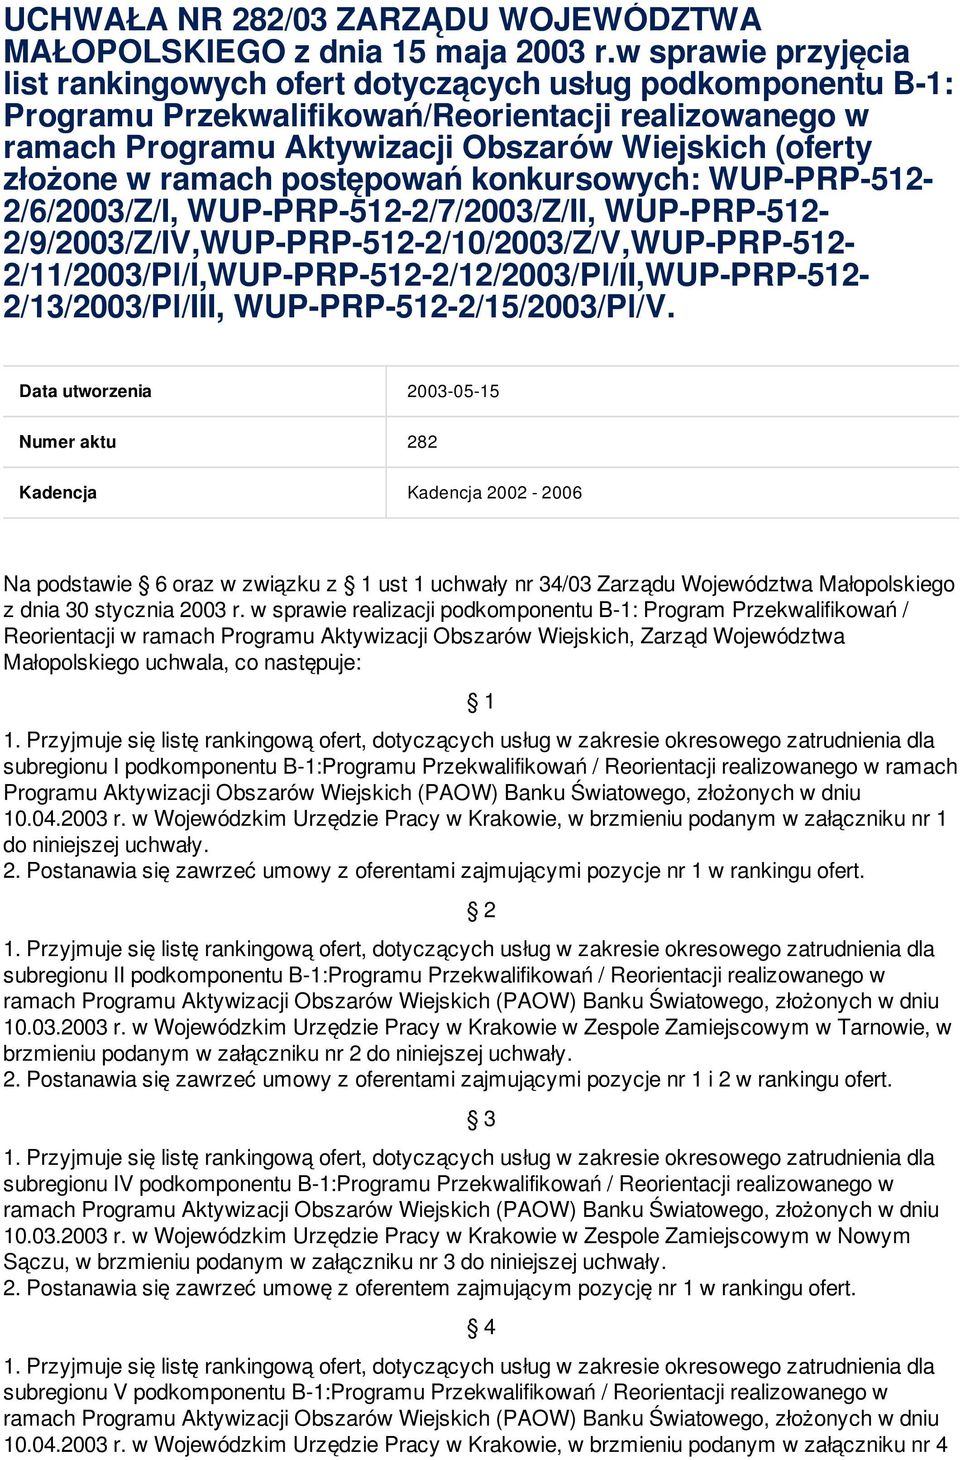 w ramach postępowań konkursowych: WUP-PRP-512-2/6/2003/Z/I, WUP-PRP-512-2/7/2003/Z/II,